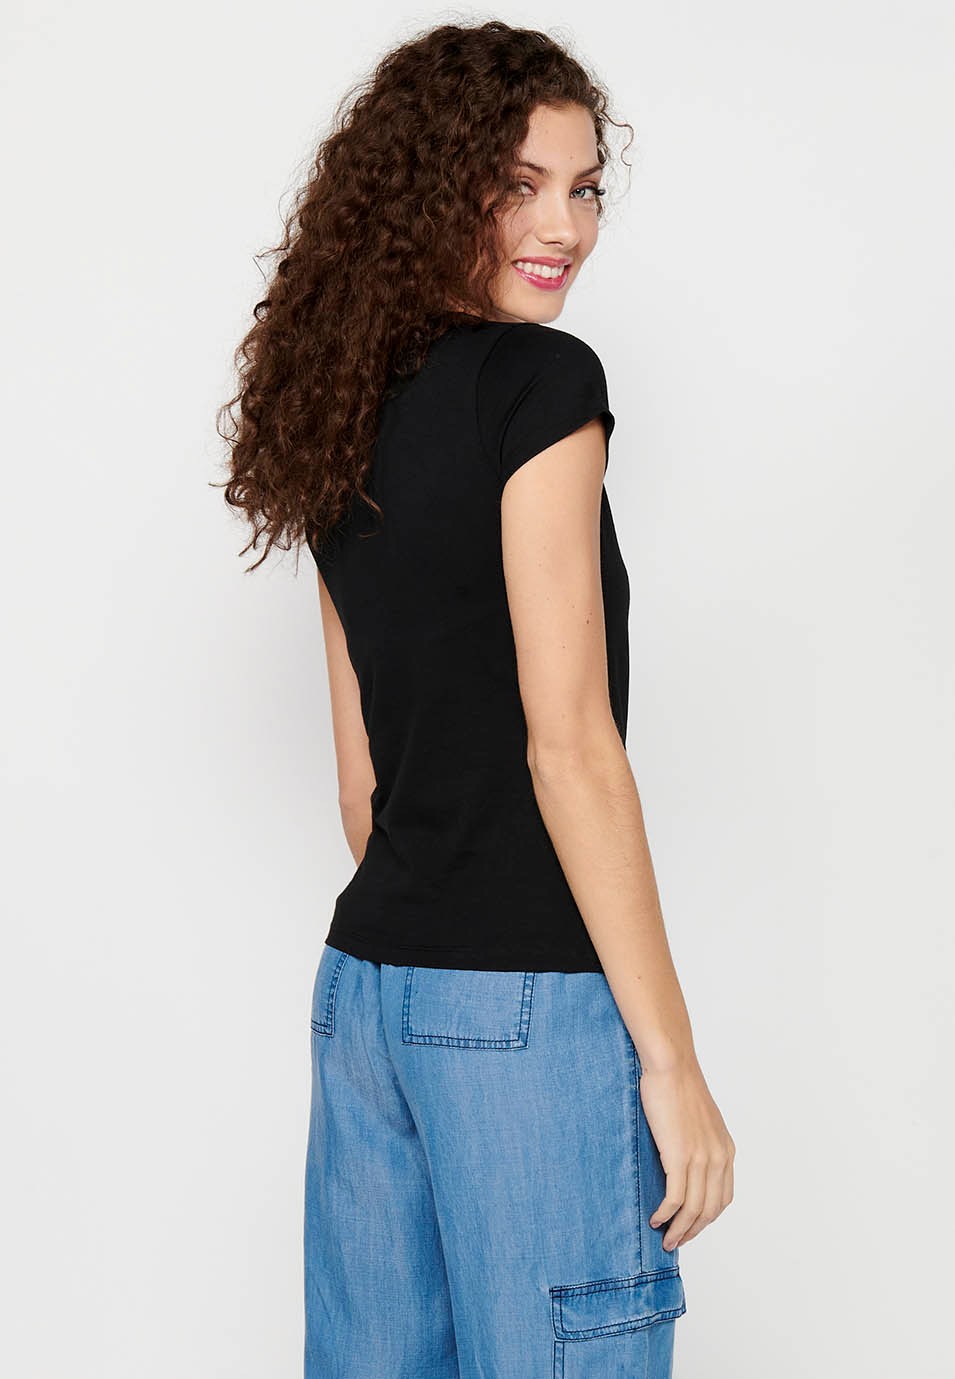 Damen-Kurzarm-T-Shirt aus Baumwolle mit Rundhalsausschnitt und schwarzem Farbaufdruck auf der Vorderseite 2